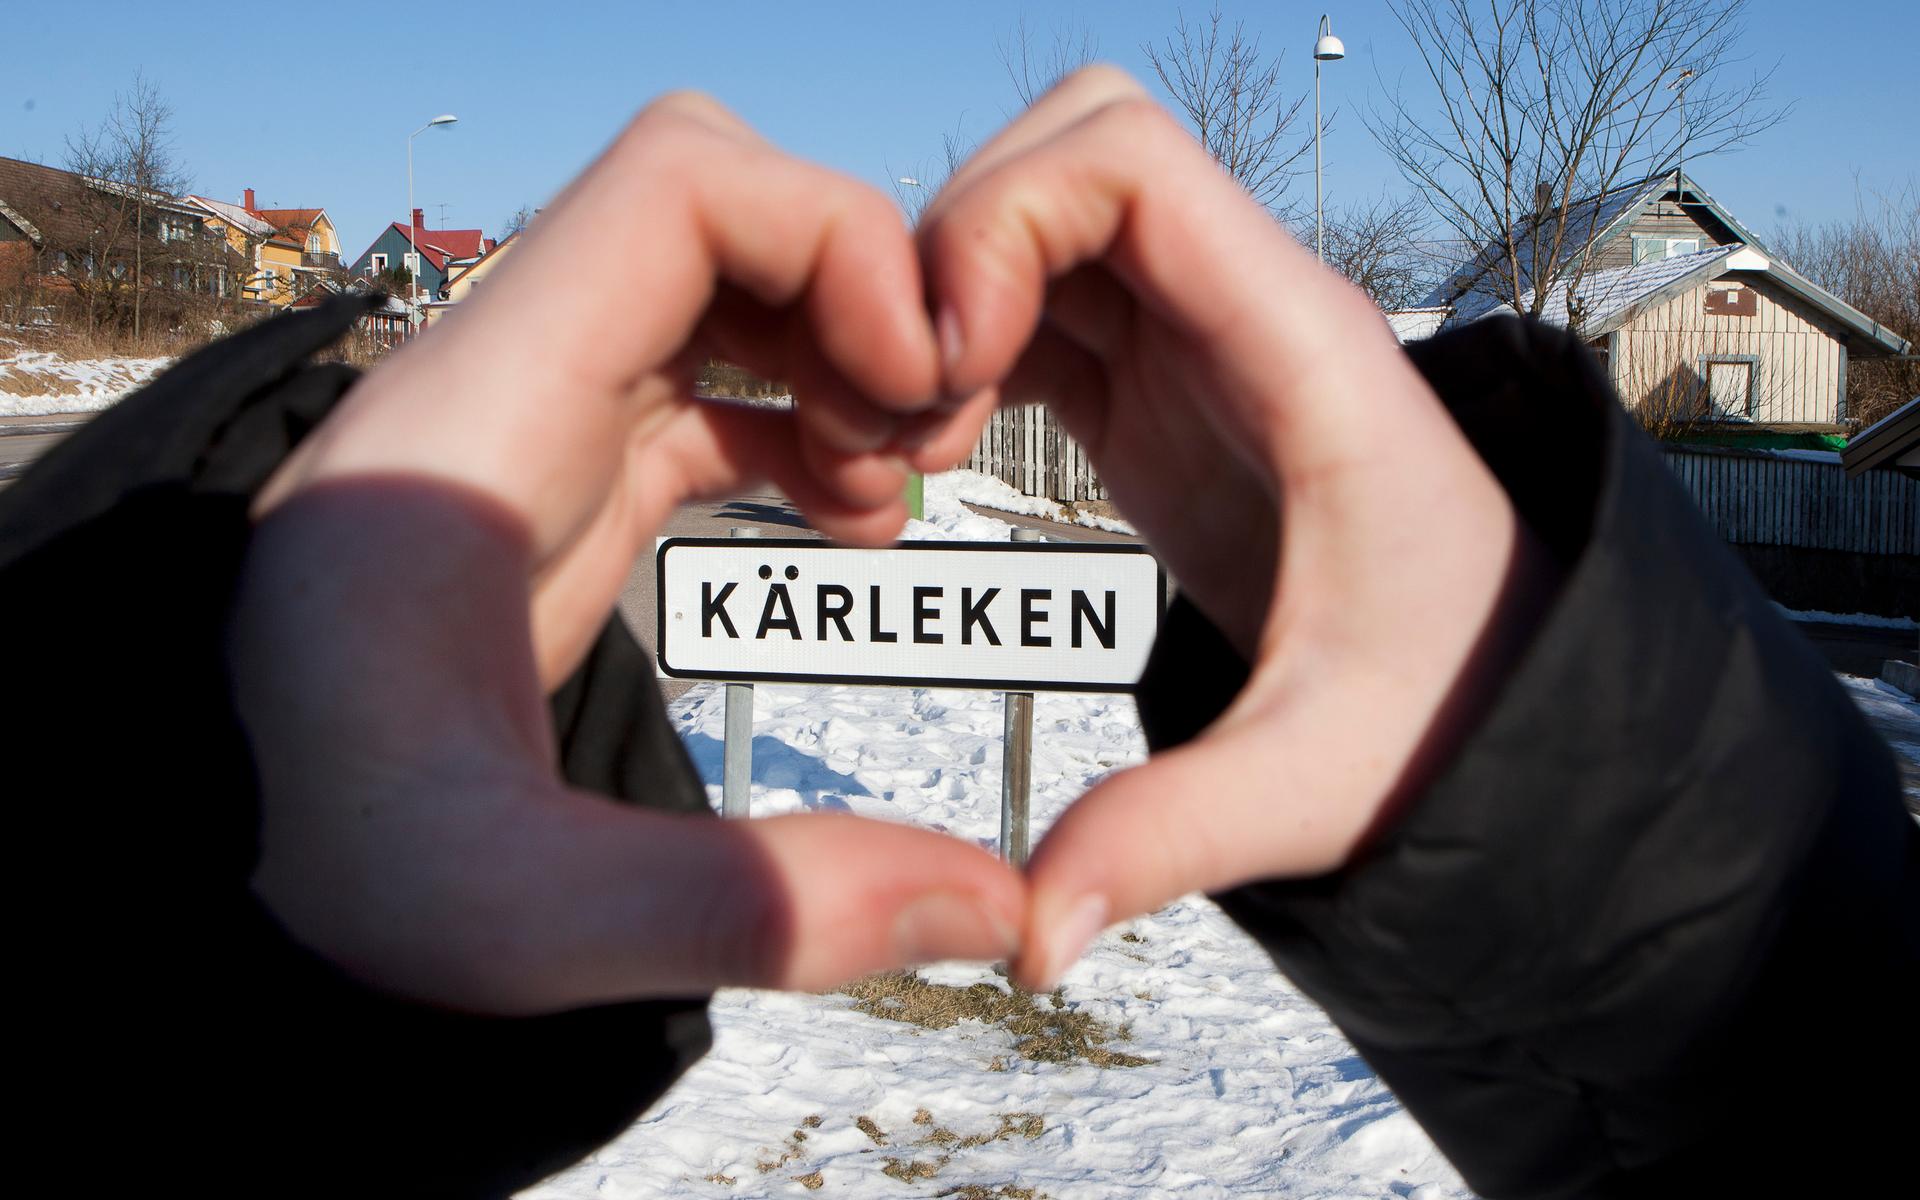 Halmstadstadsdelen Kärleken är ett av de vackraste ortnamnen i Sverige, enligt en ny undersökning. Hela listan finns sammanfattad längre ner i artikeln. 